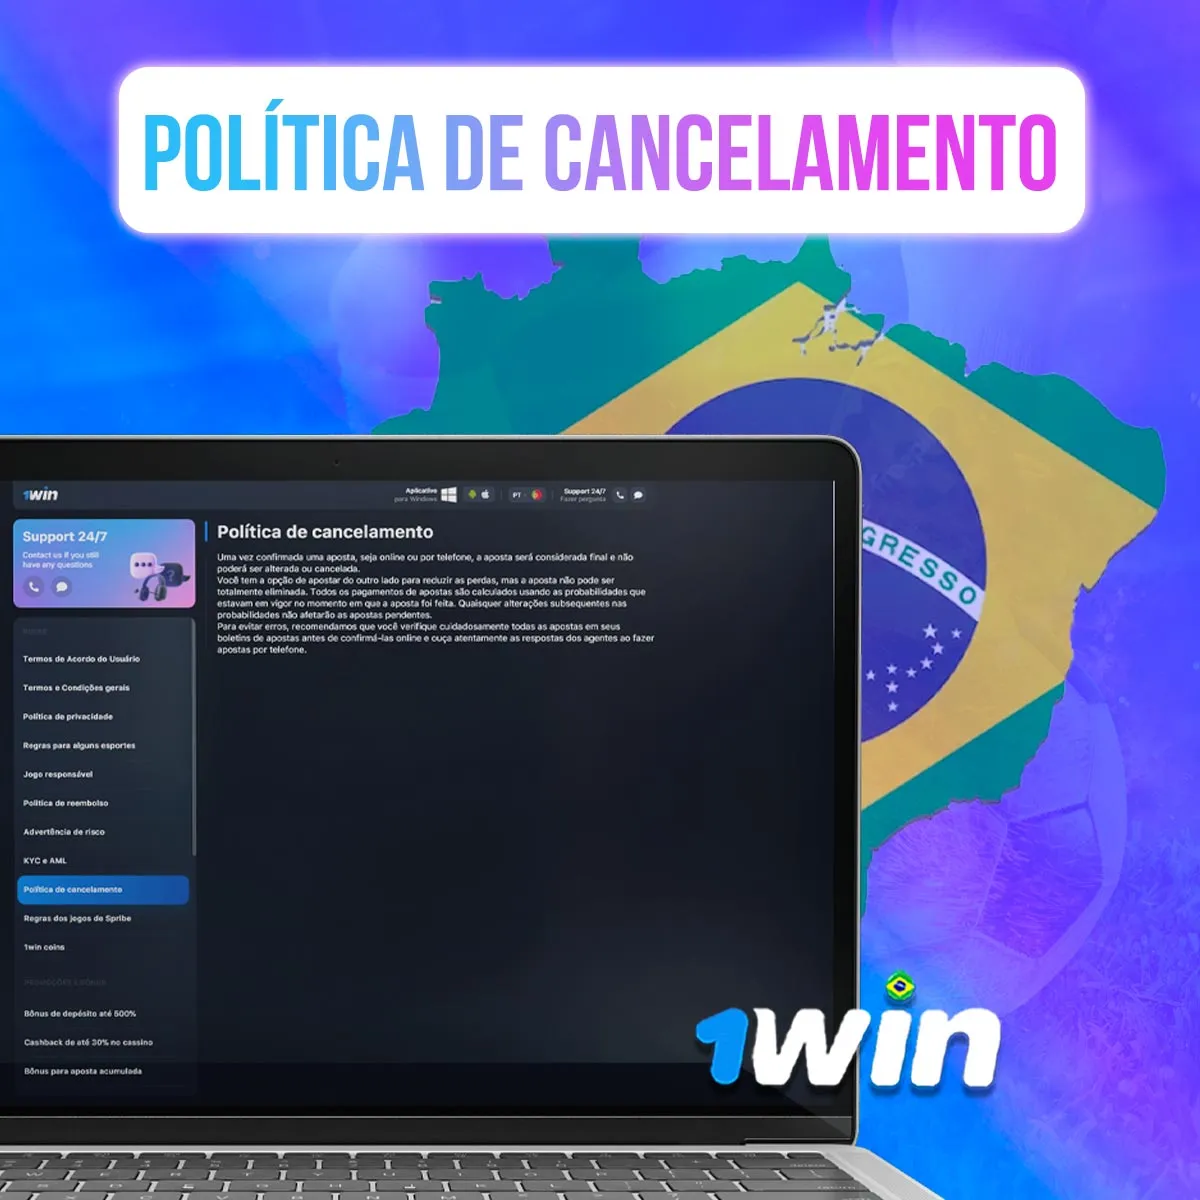 Política de cancelamento da 1win no mercado brasileiro